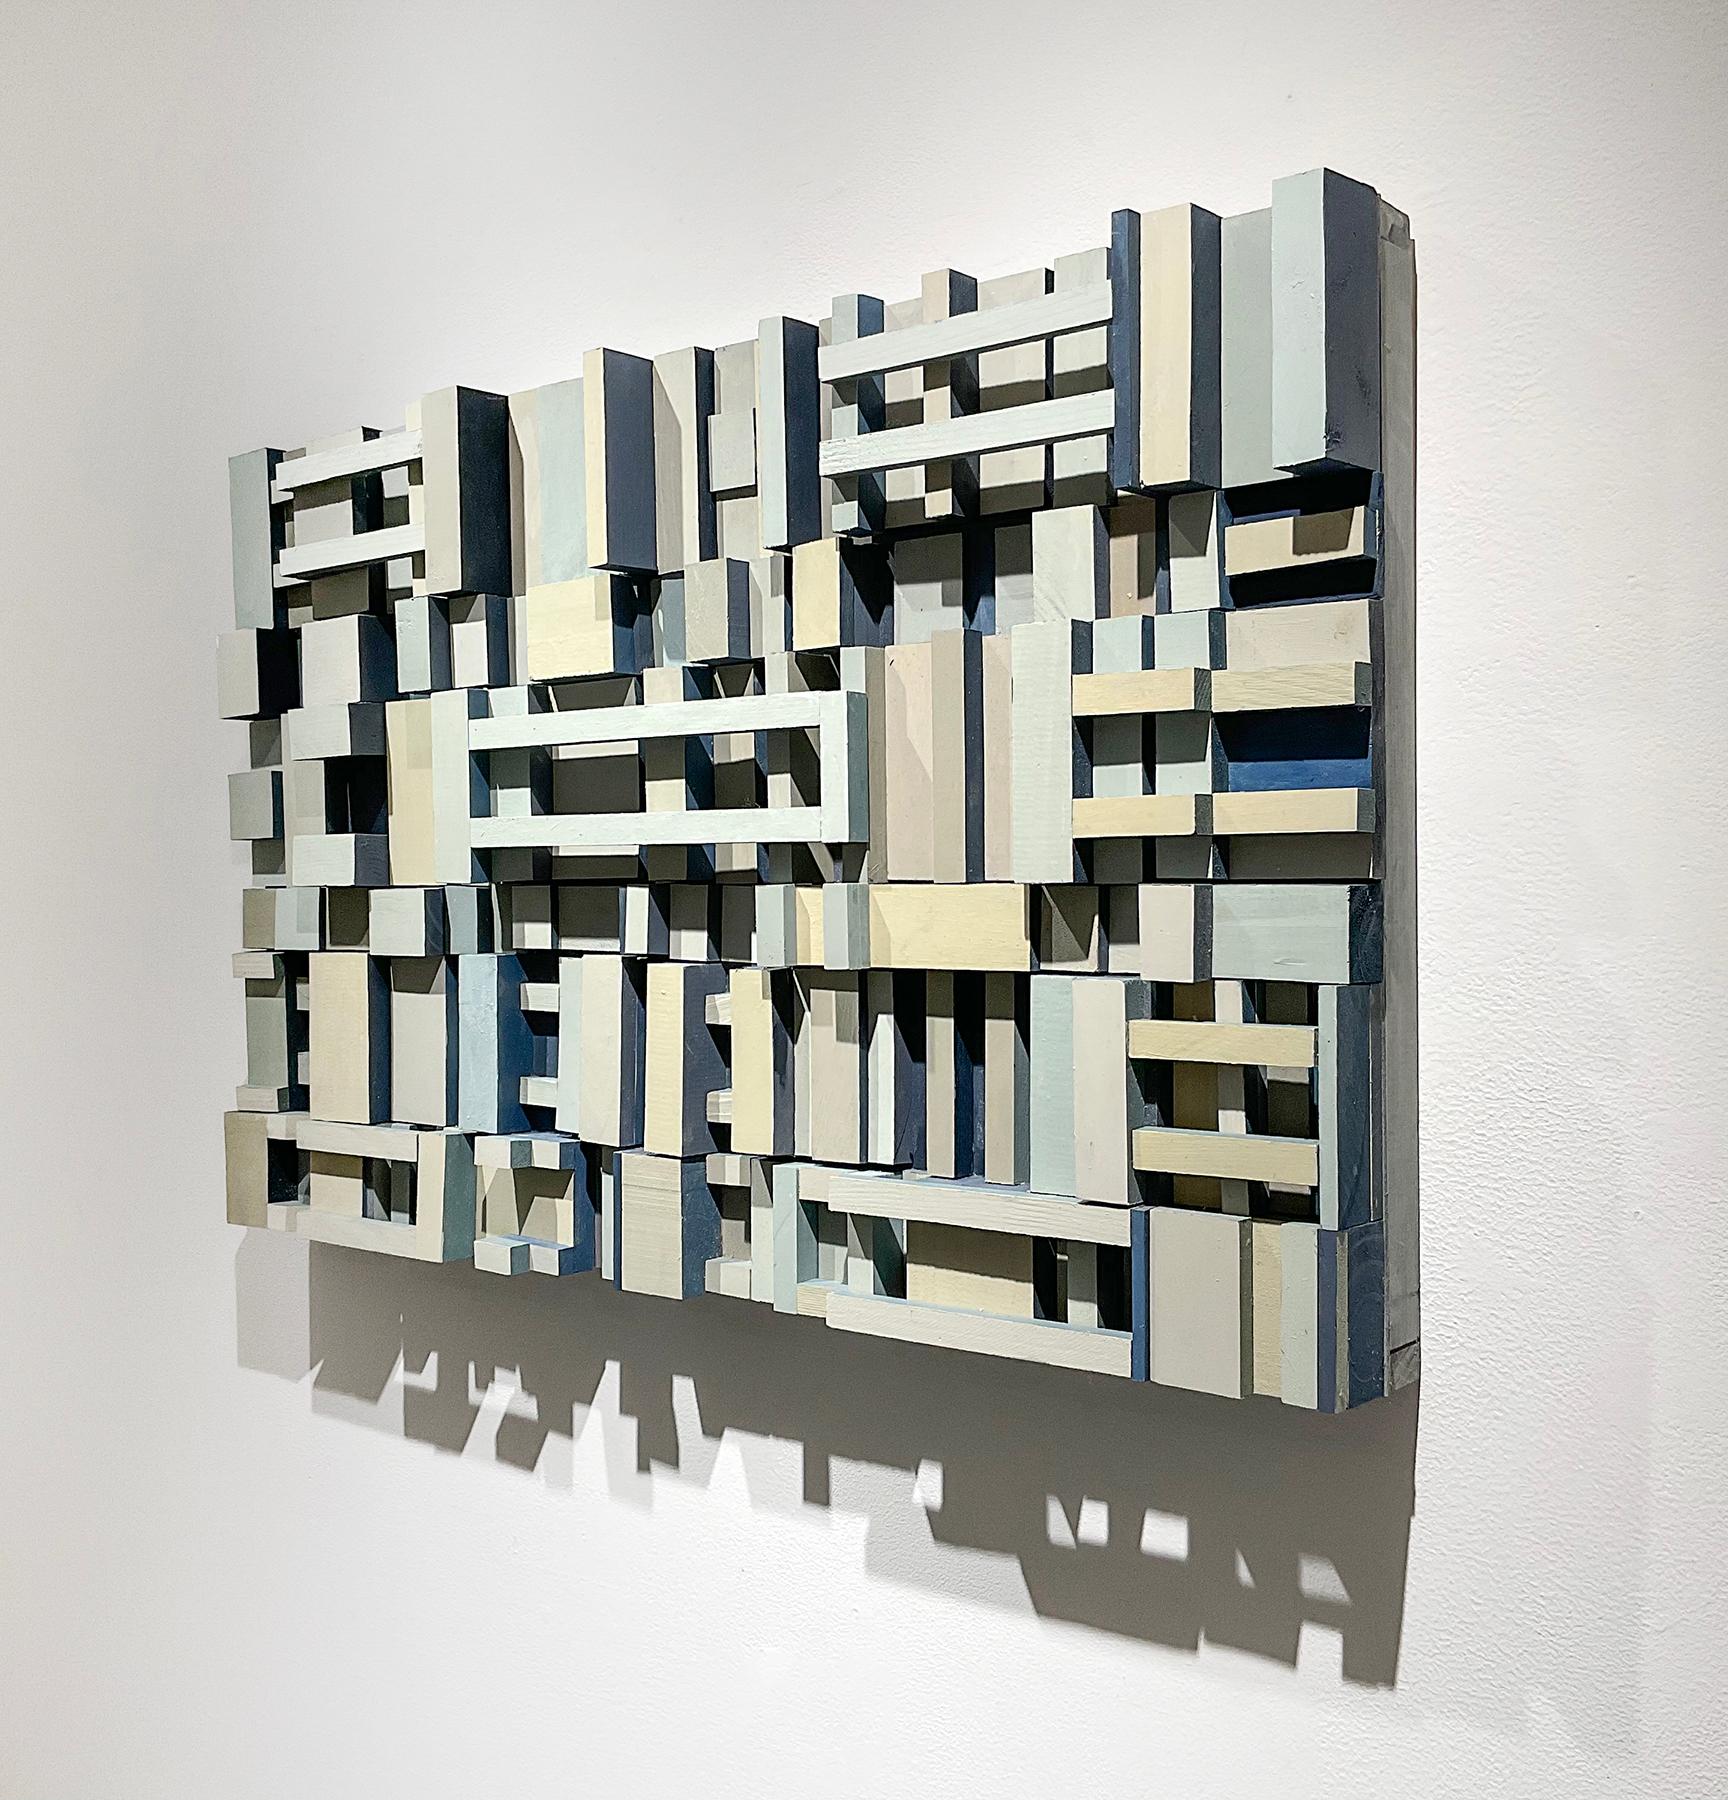 Abstrakte geometrische dreidimensionale Wandskulptur aus Holz in Hellgrau, Hellblau, Helltaupe und Beige mit Akzenten in Sturmblau  
